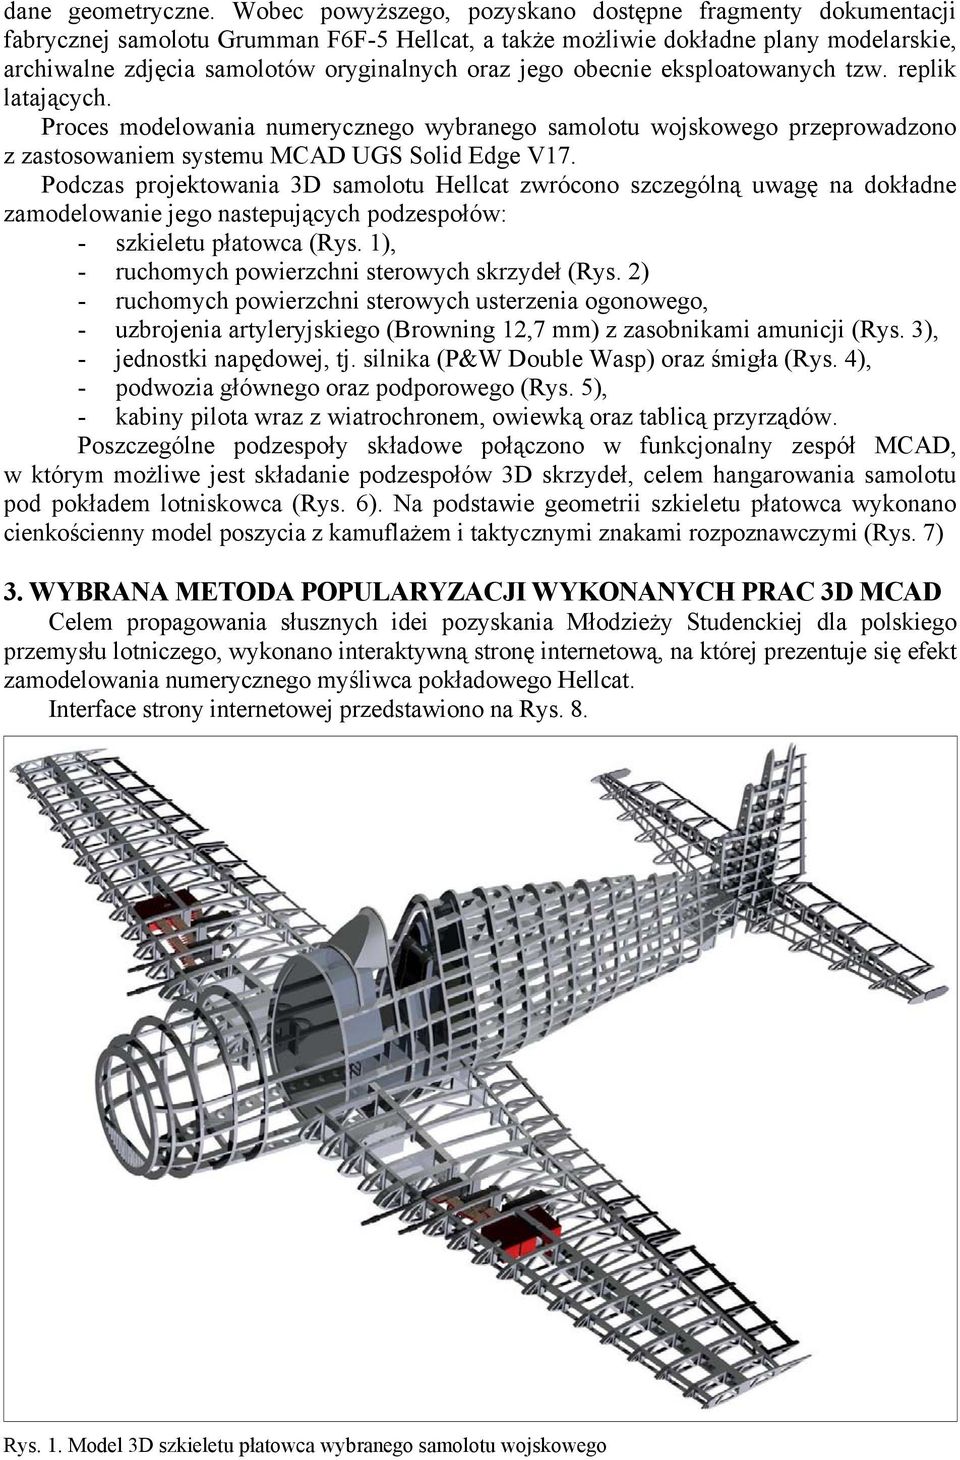 obecnie eksploatowanych tzw. replik latających. Proces modelowania numerycznego wybranego samolotu wojskowego przeprowadzono z zastosowaniem systemu MCAD UGS Solid Edge V17.